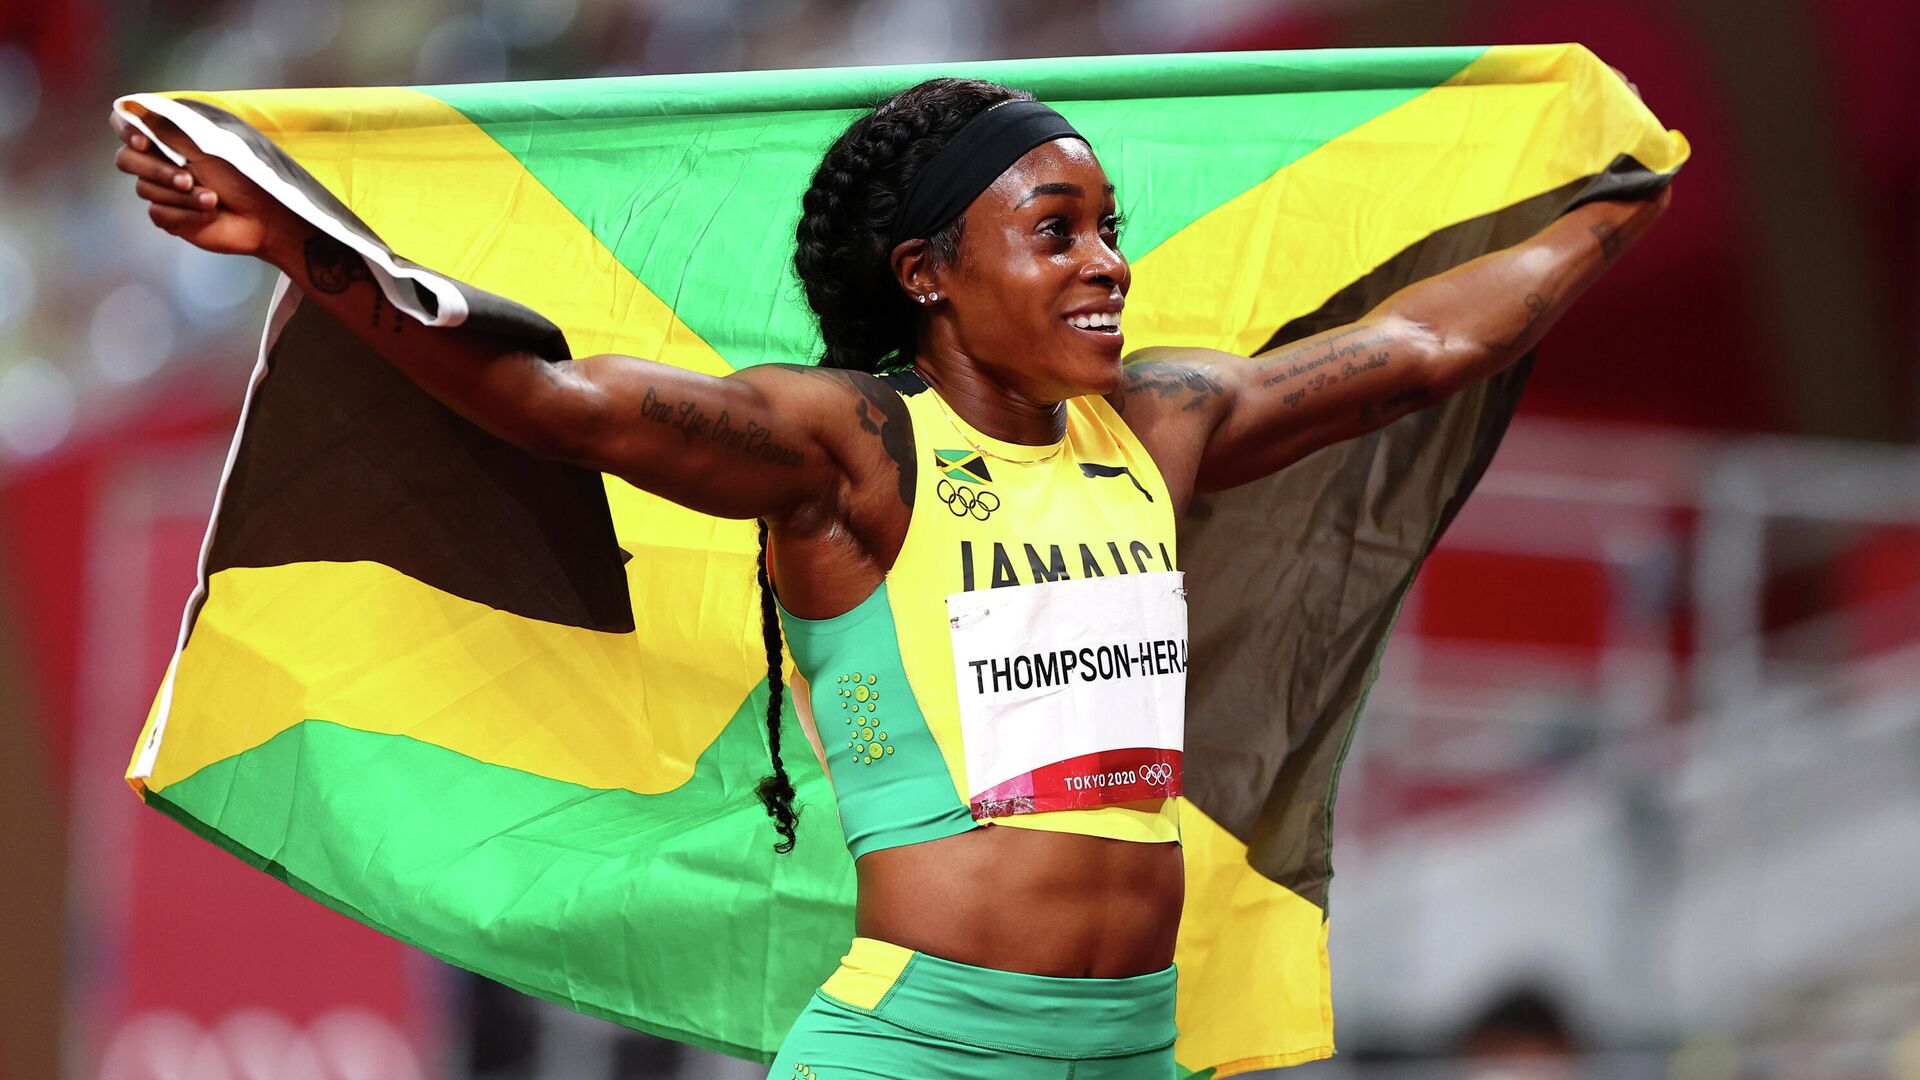 La atleta jamaicana Elaine Thompson-Herah, Tokio, el 3 de agosto de 2021 - Sputnik Mundo, 1920, 03.08.2021